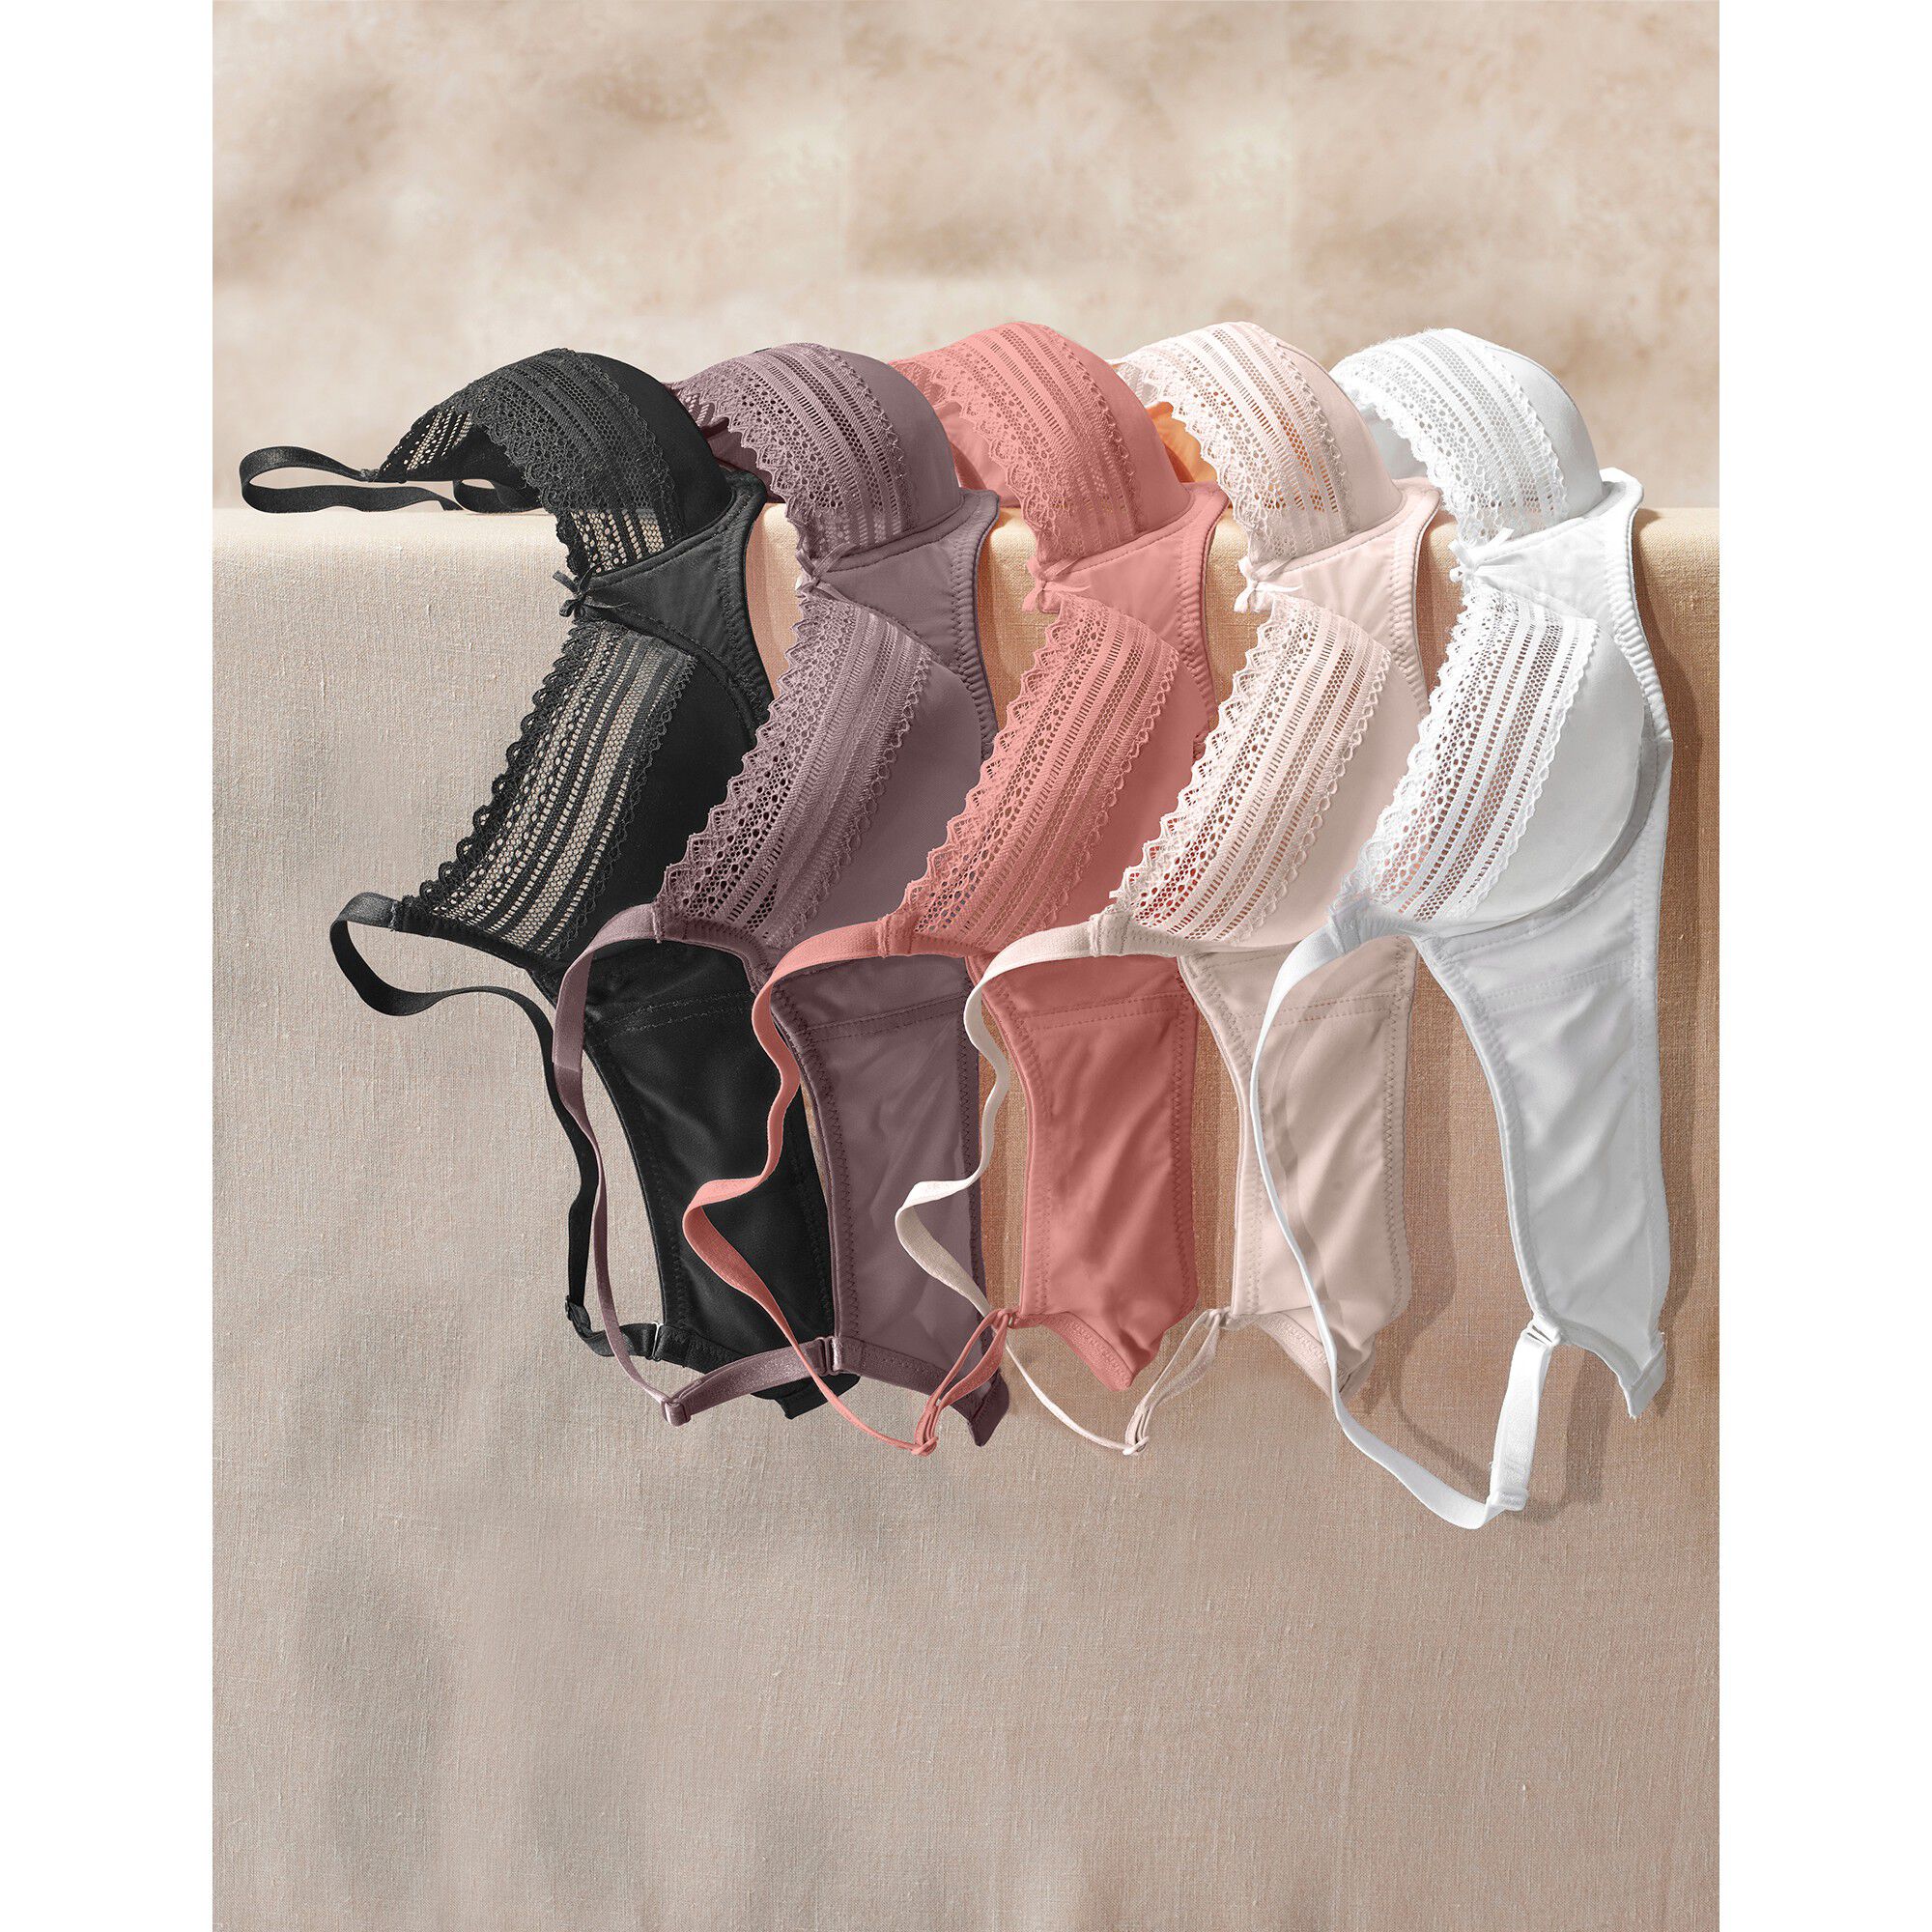 Flux Abondant ® Protect Shorty Menstruel Lavable En Coton Bio Blacheporte Femme Vêtements Sous-vêtements Culottes & Bas Shortys 1 